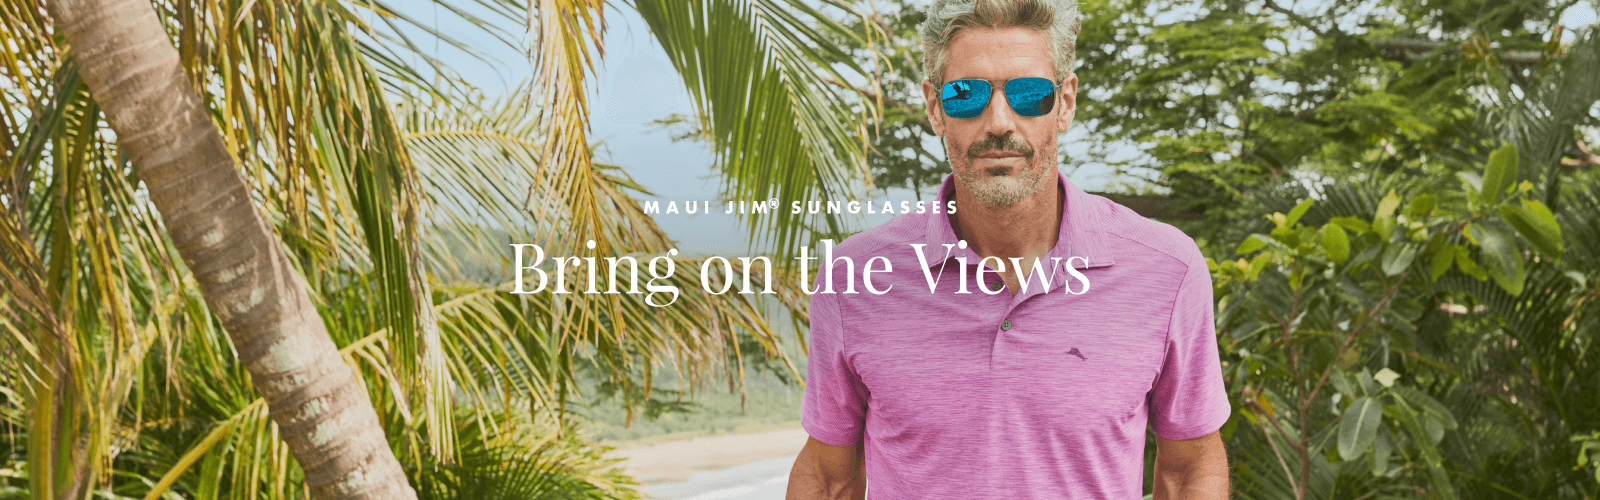 Maui Jim® Sunglasses: Bring on the Views